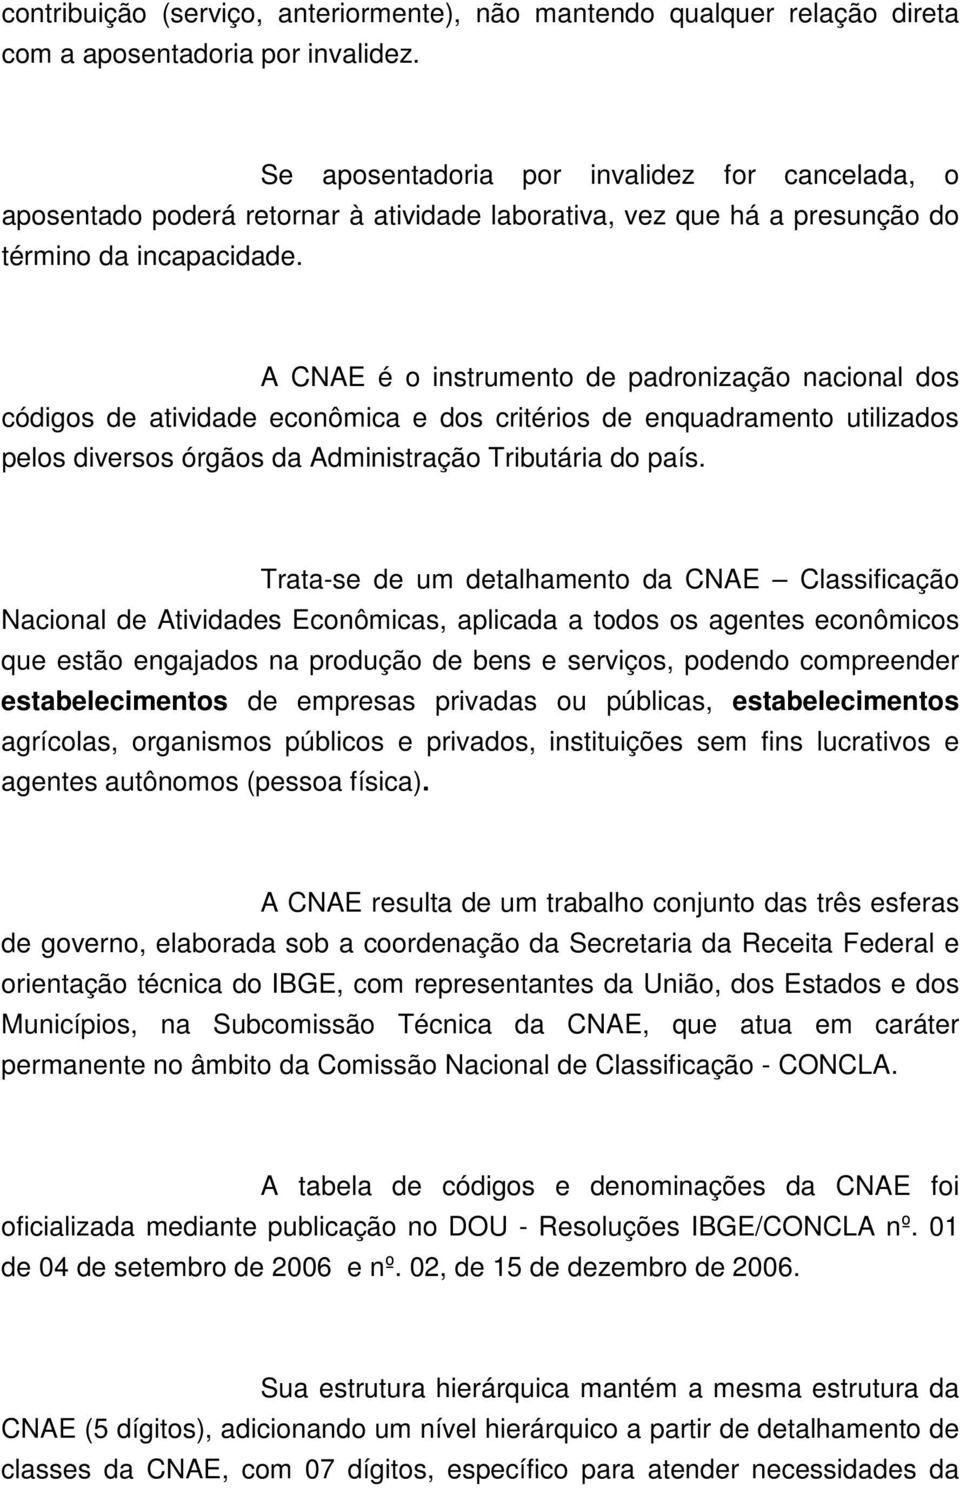 A CNAE é o instrumento de padronização nacional dos códigos de atividade econômica e dos critérios de enquadramento utilizados pelos diversos órgãos da Administração Tributária do país.